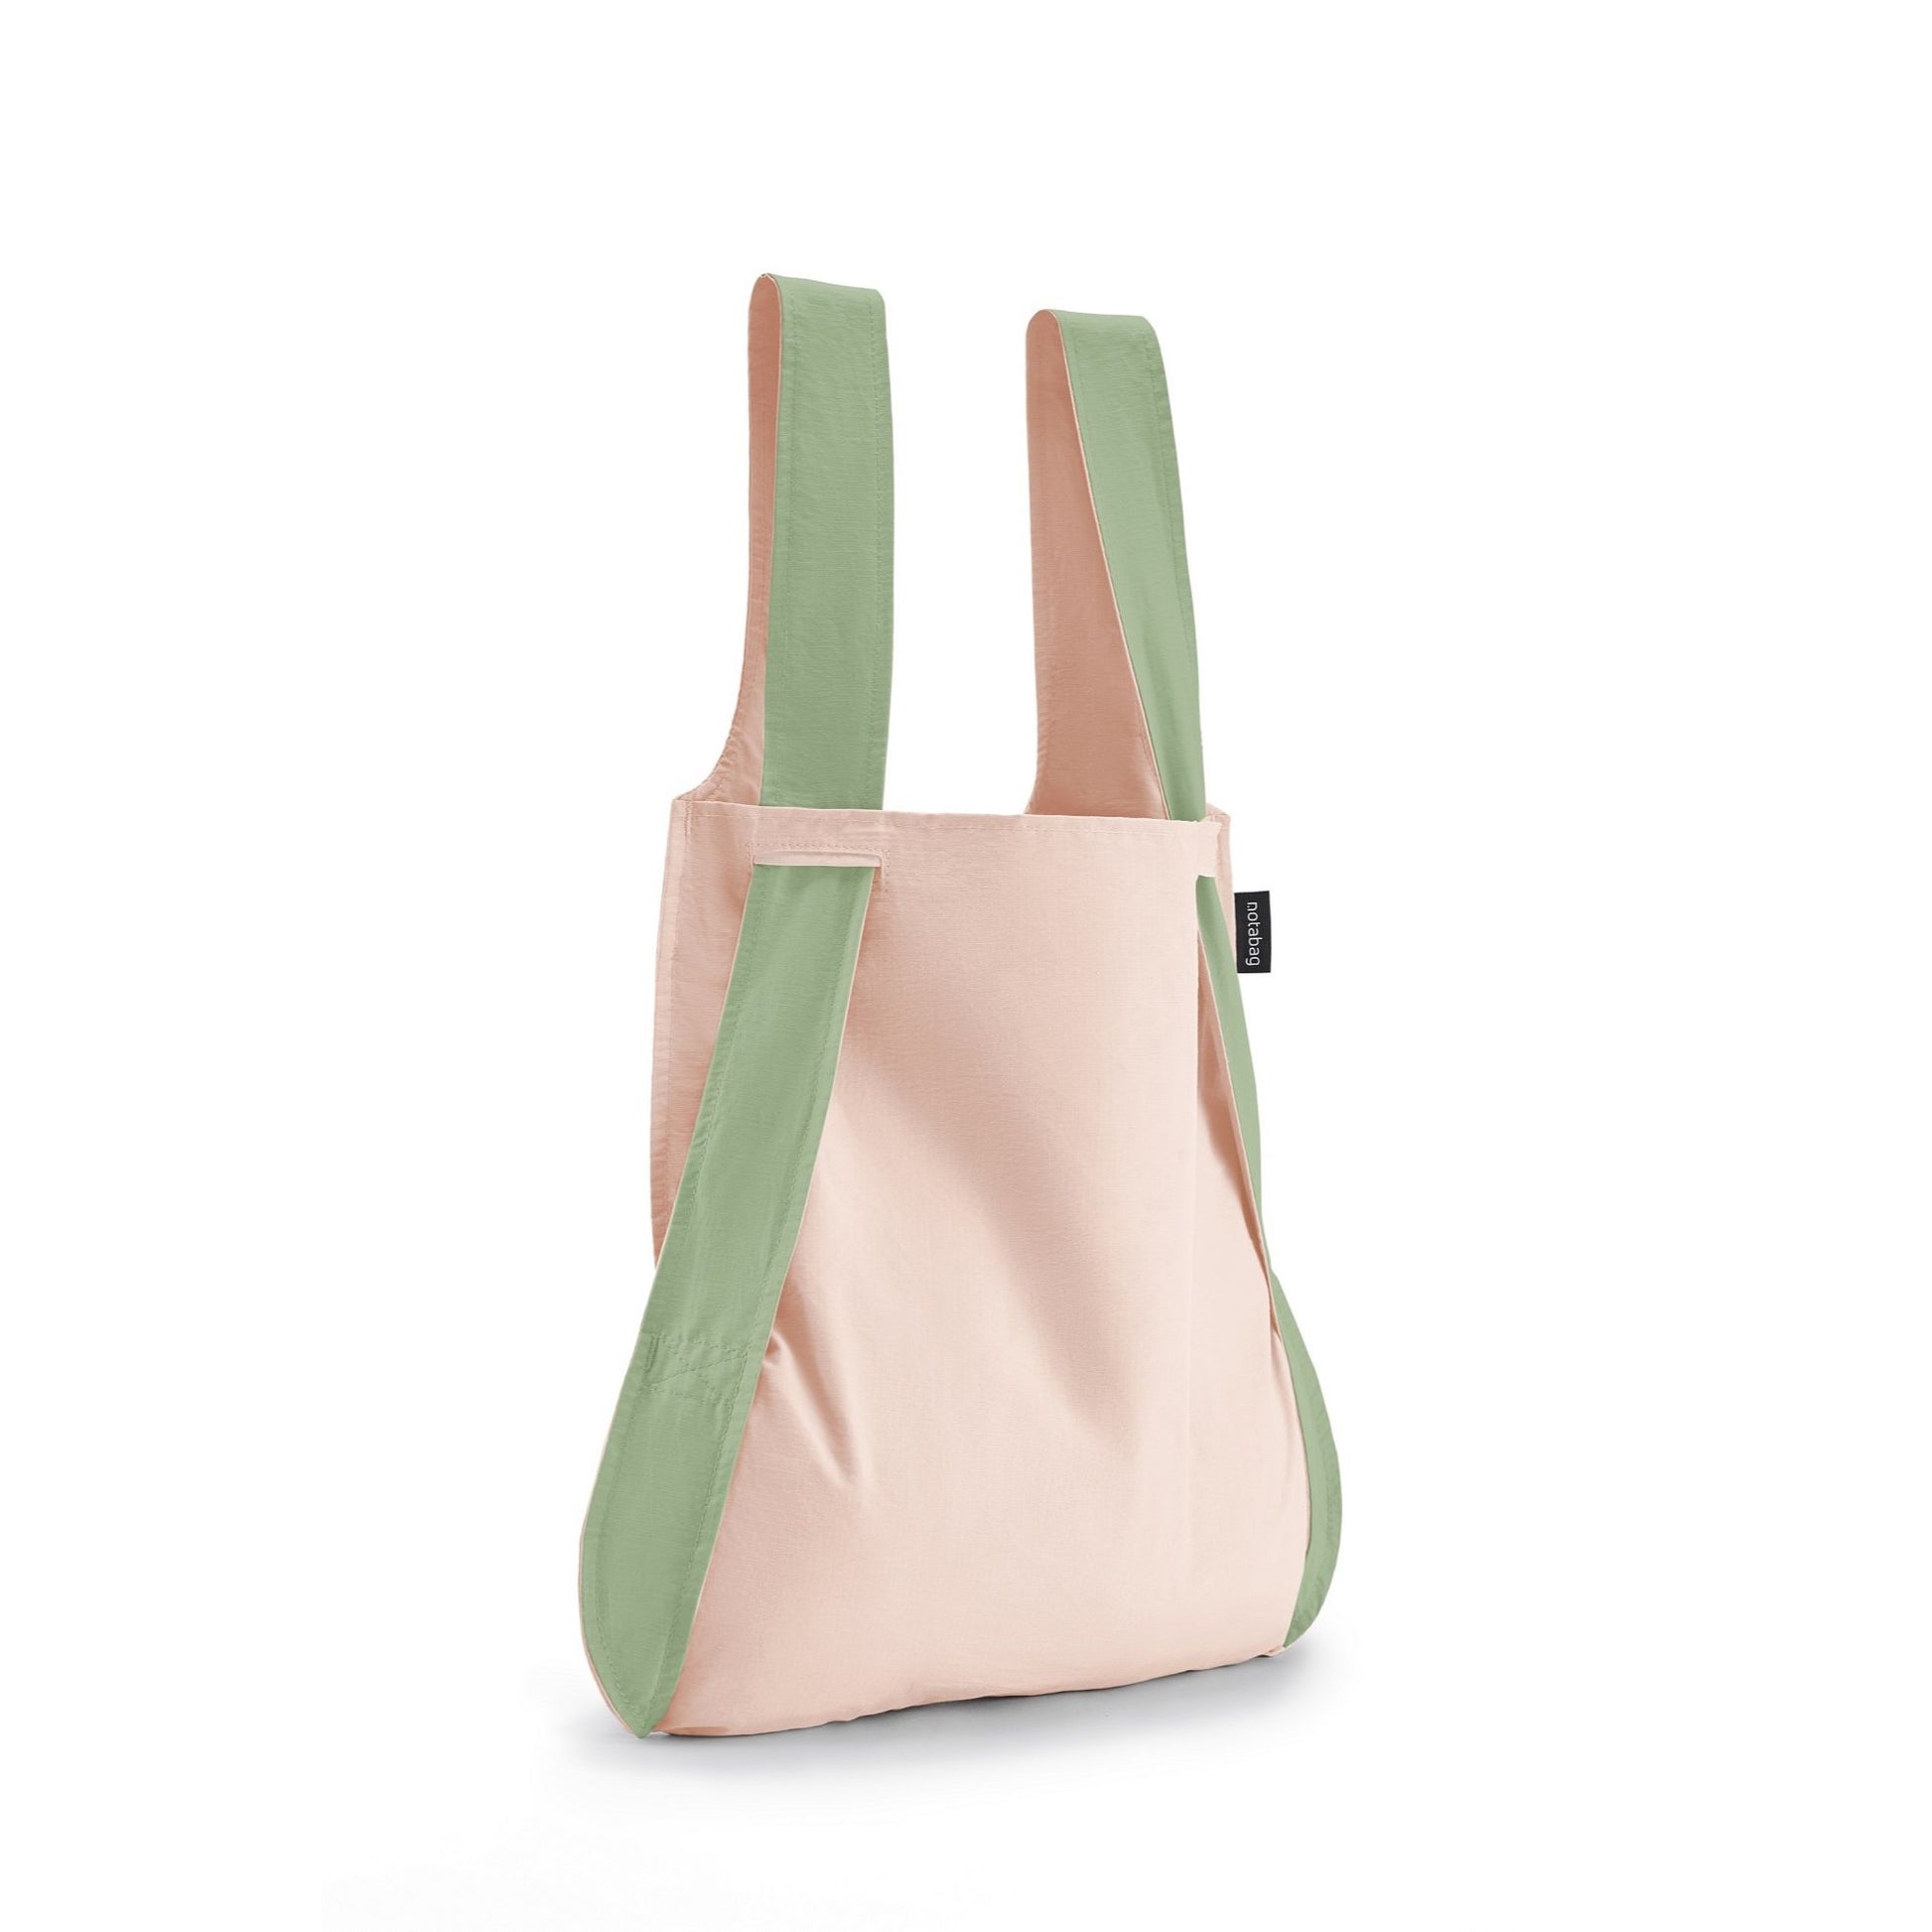 Notabag original olive rose foldable bag and backpack